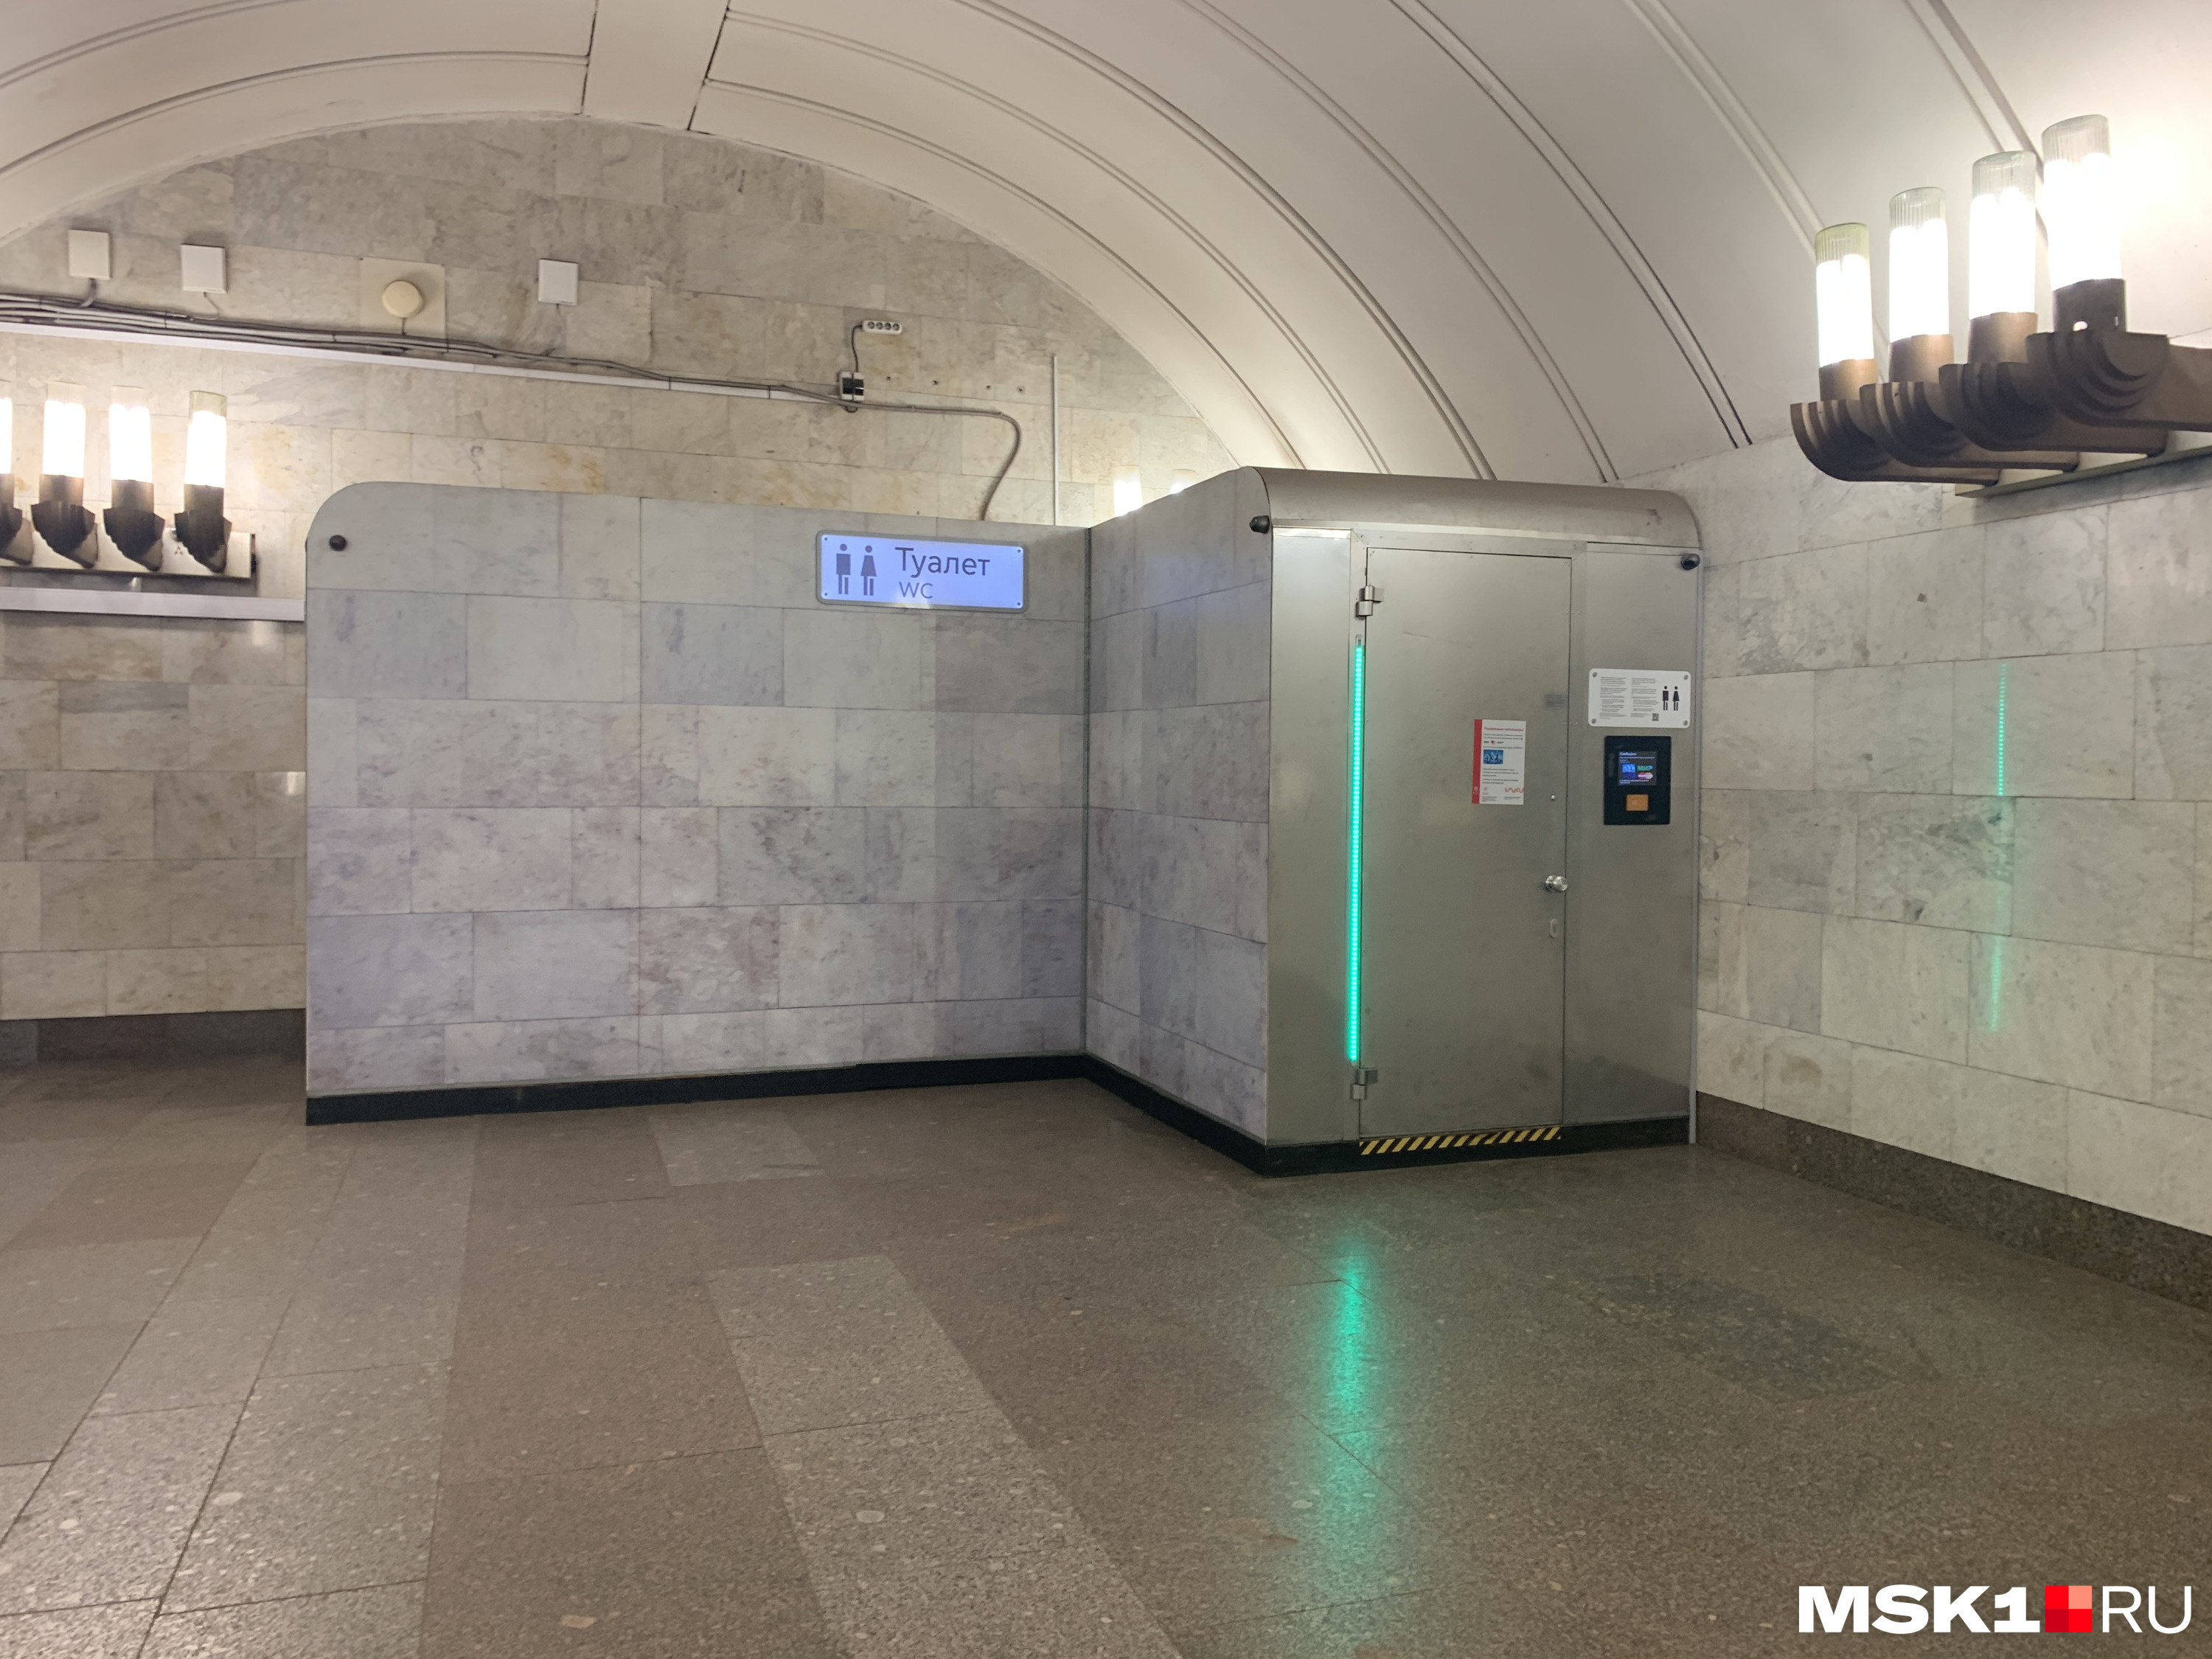 Туалет в метро на каких. Туалет в метро. Туалеты в метро Москвы. Туалет в метро внутри. Туалеты метрополитена Москвы.